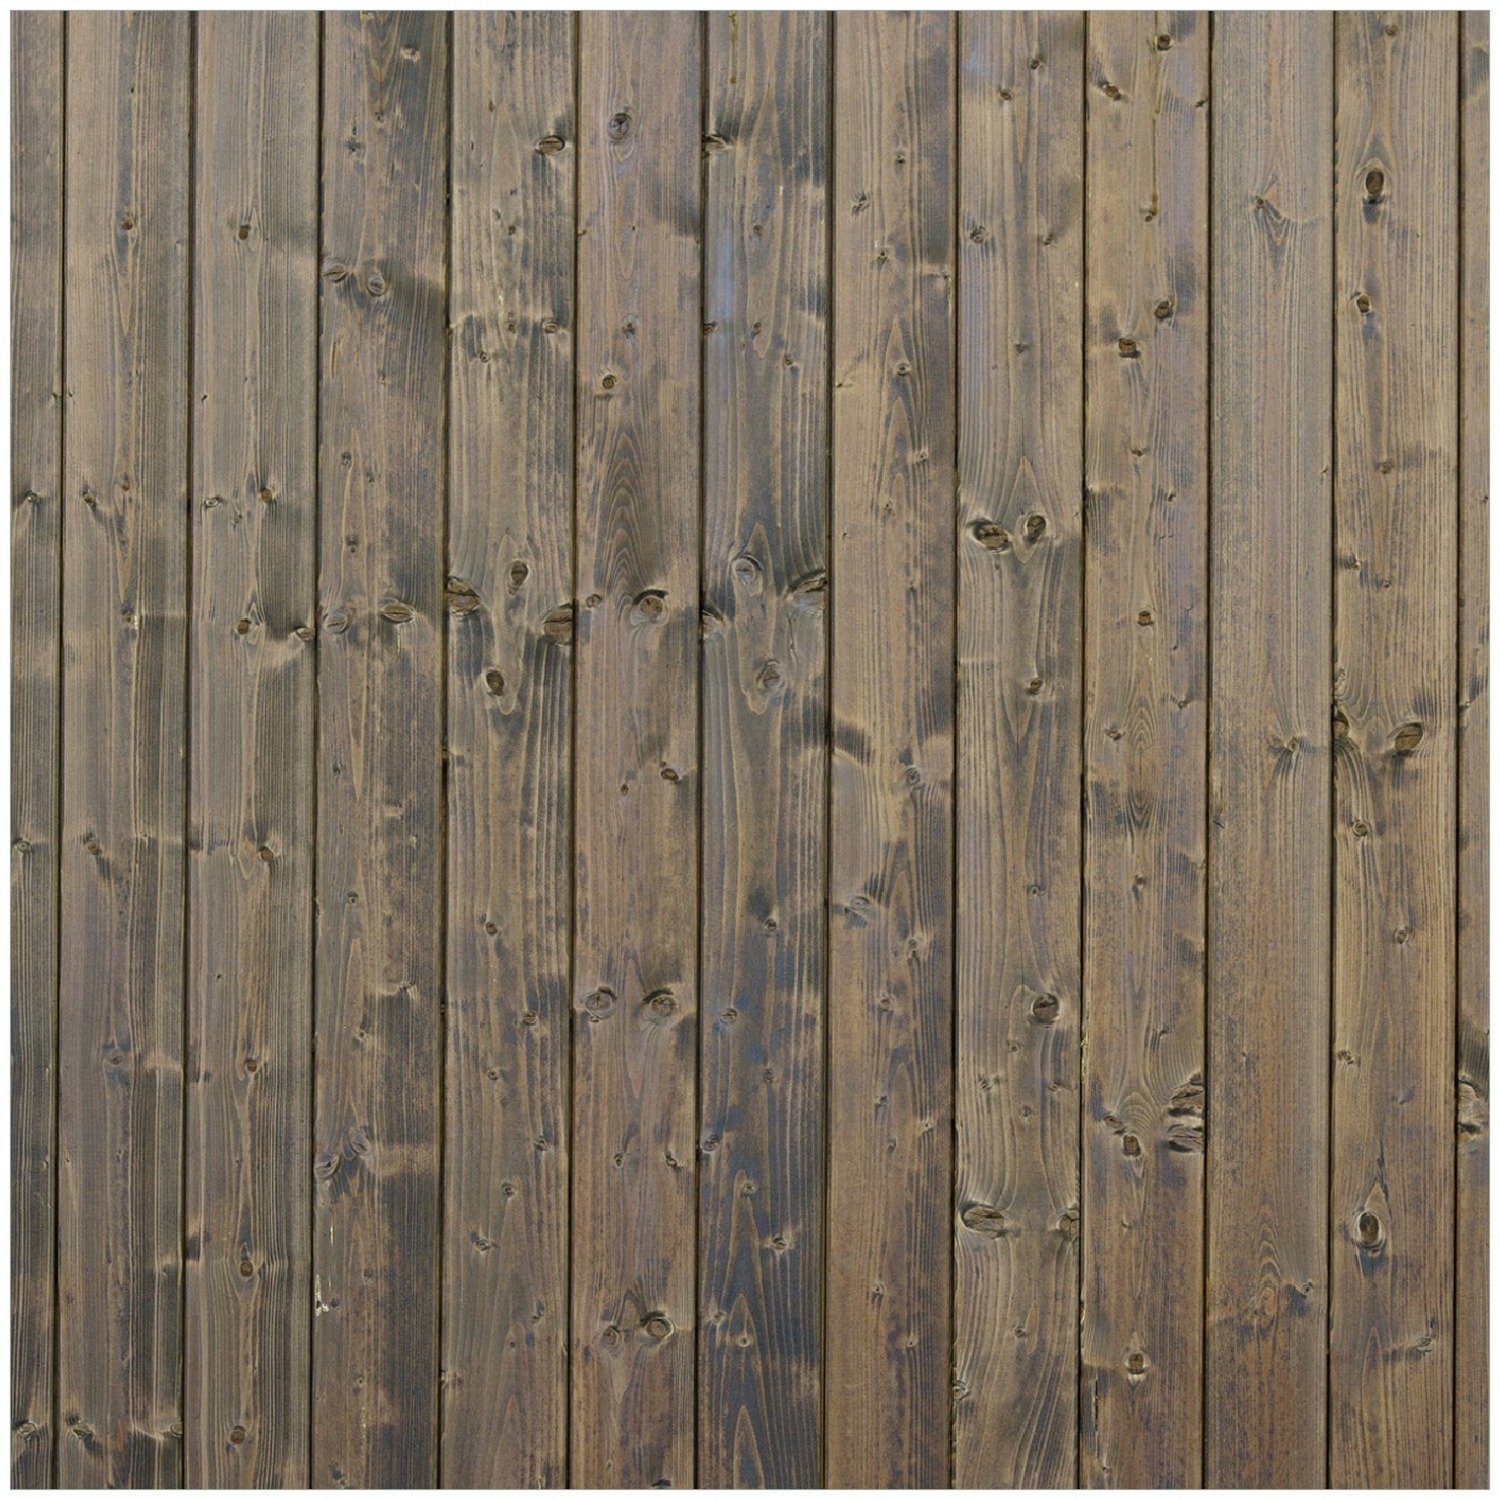 Wallario Memoboard Holzpaneelen in grau braun - Holzmuster mit Maserung